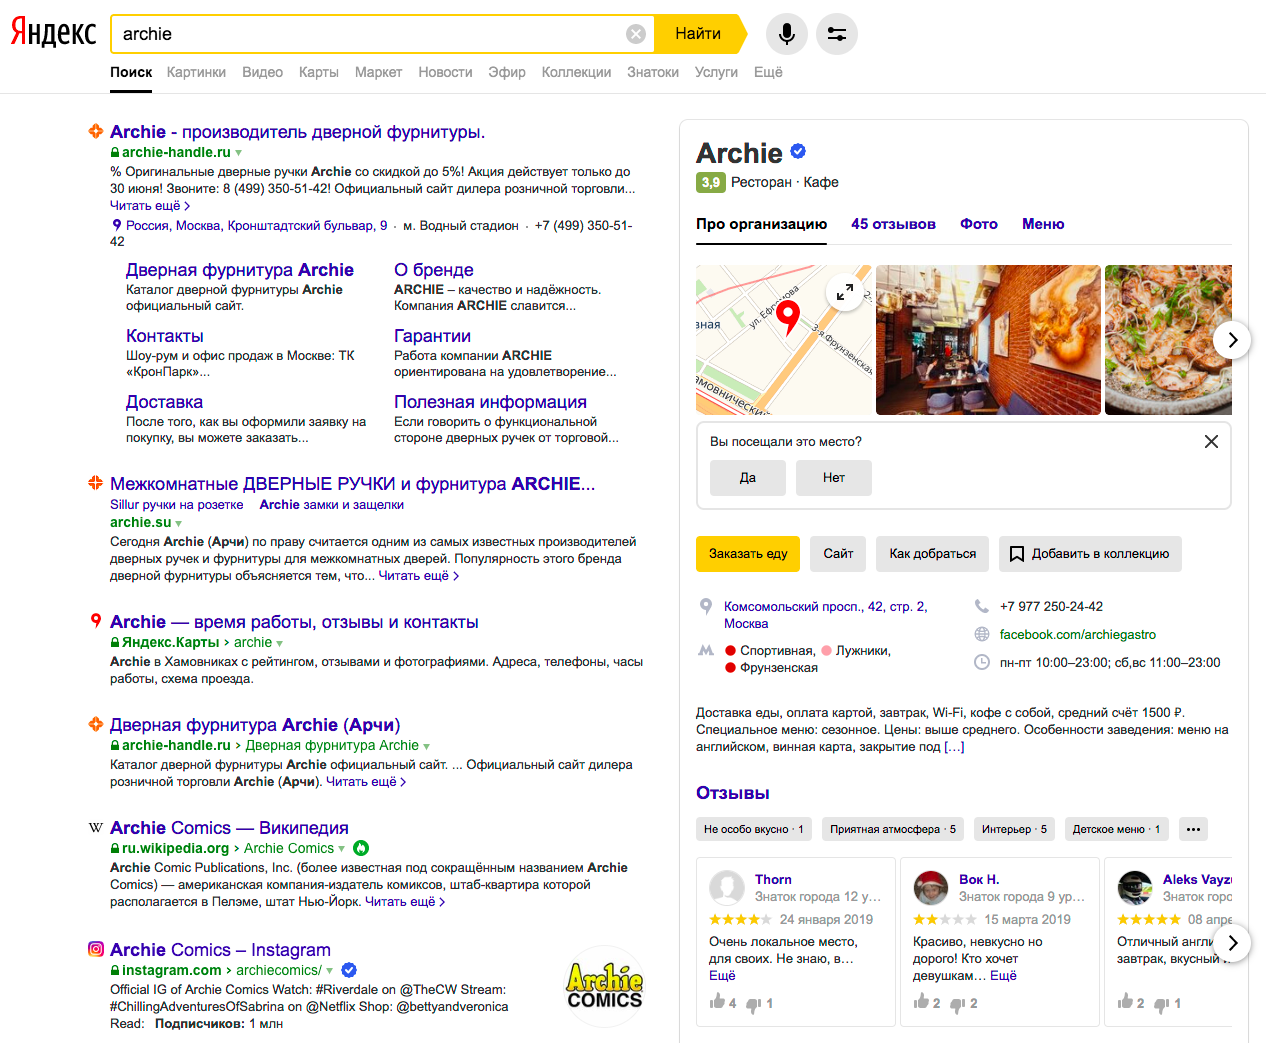 Особенности работы поисковой системы Яндекс